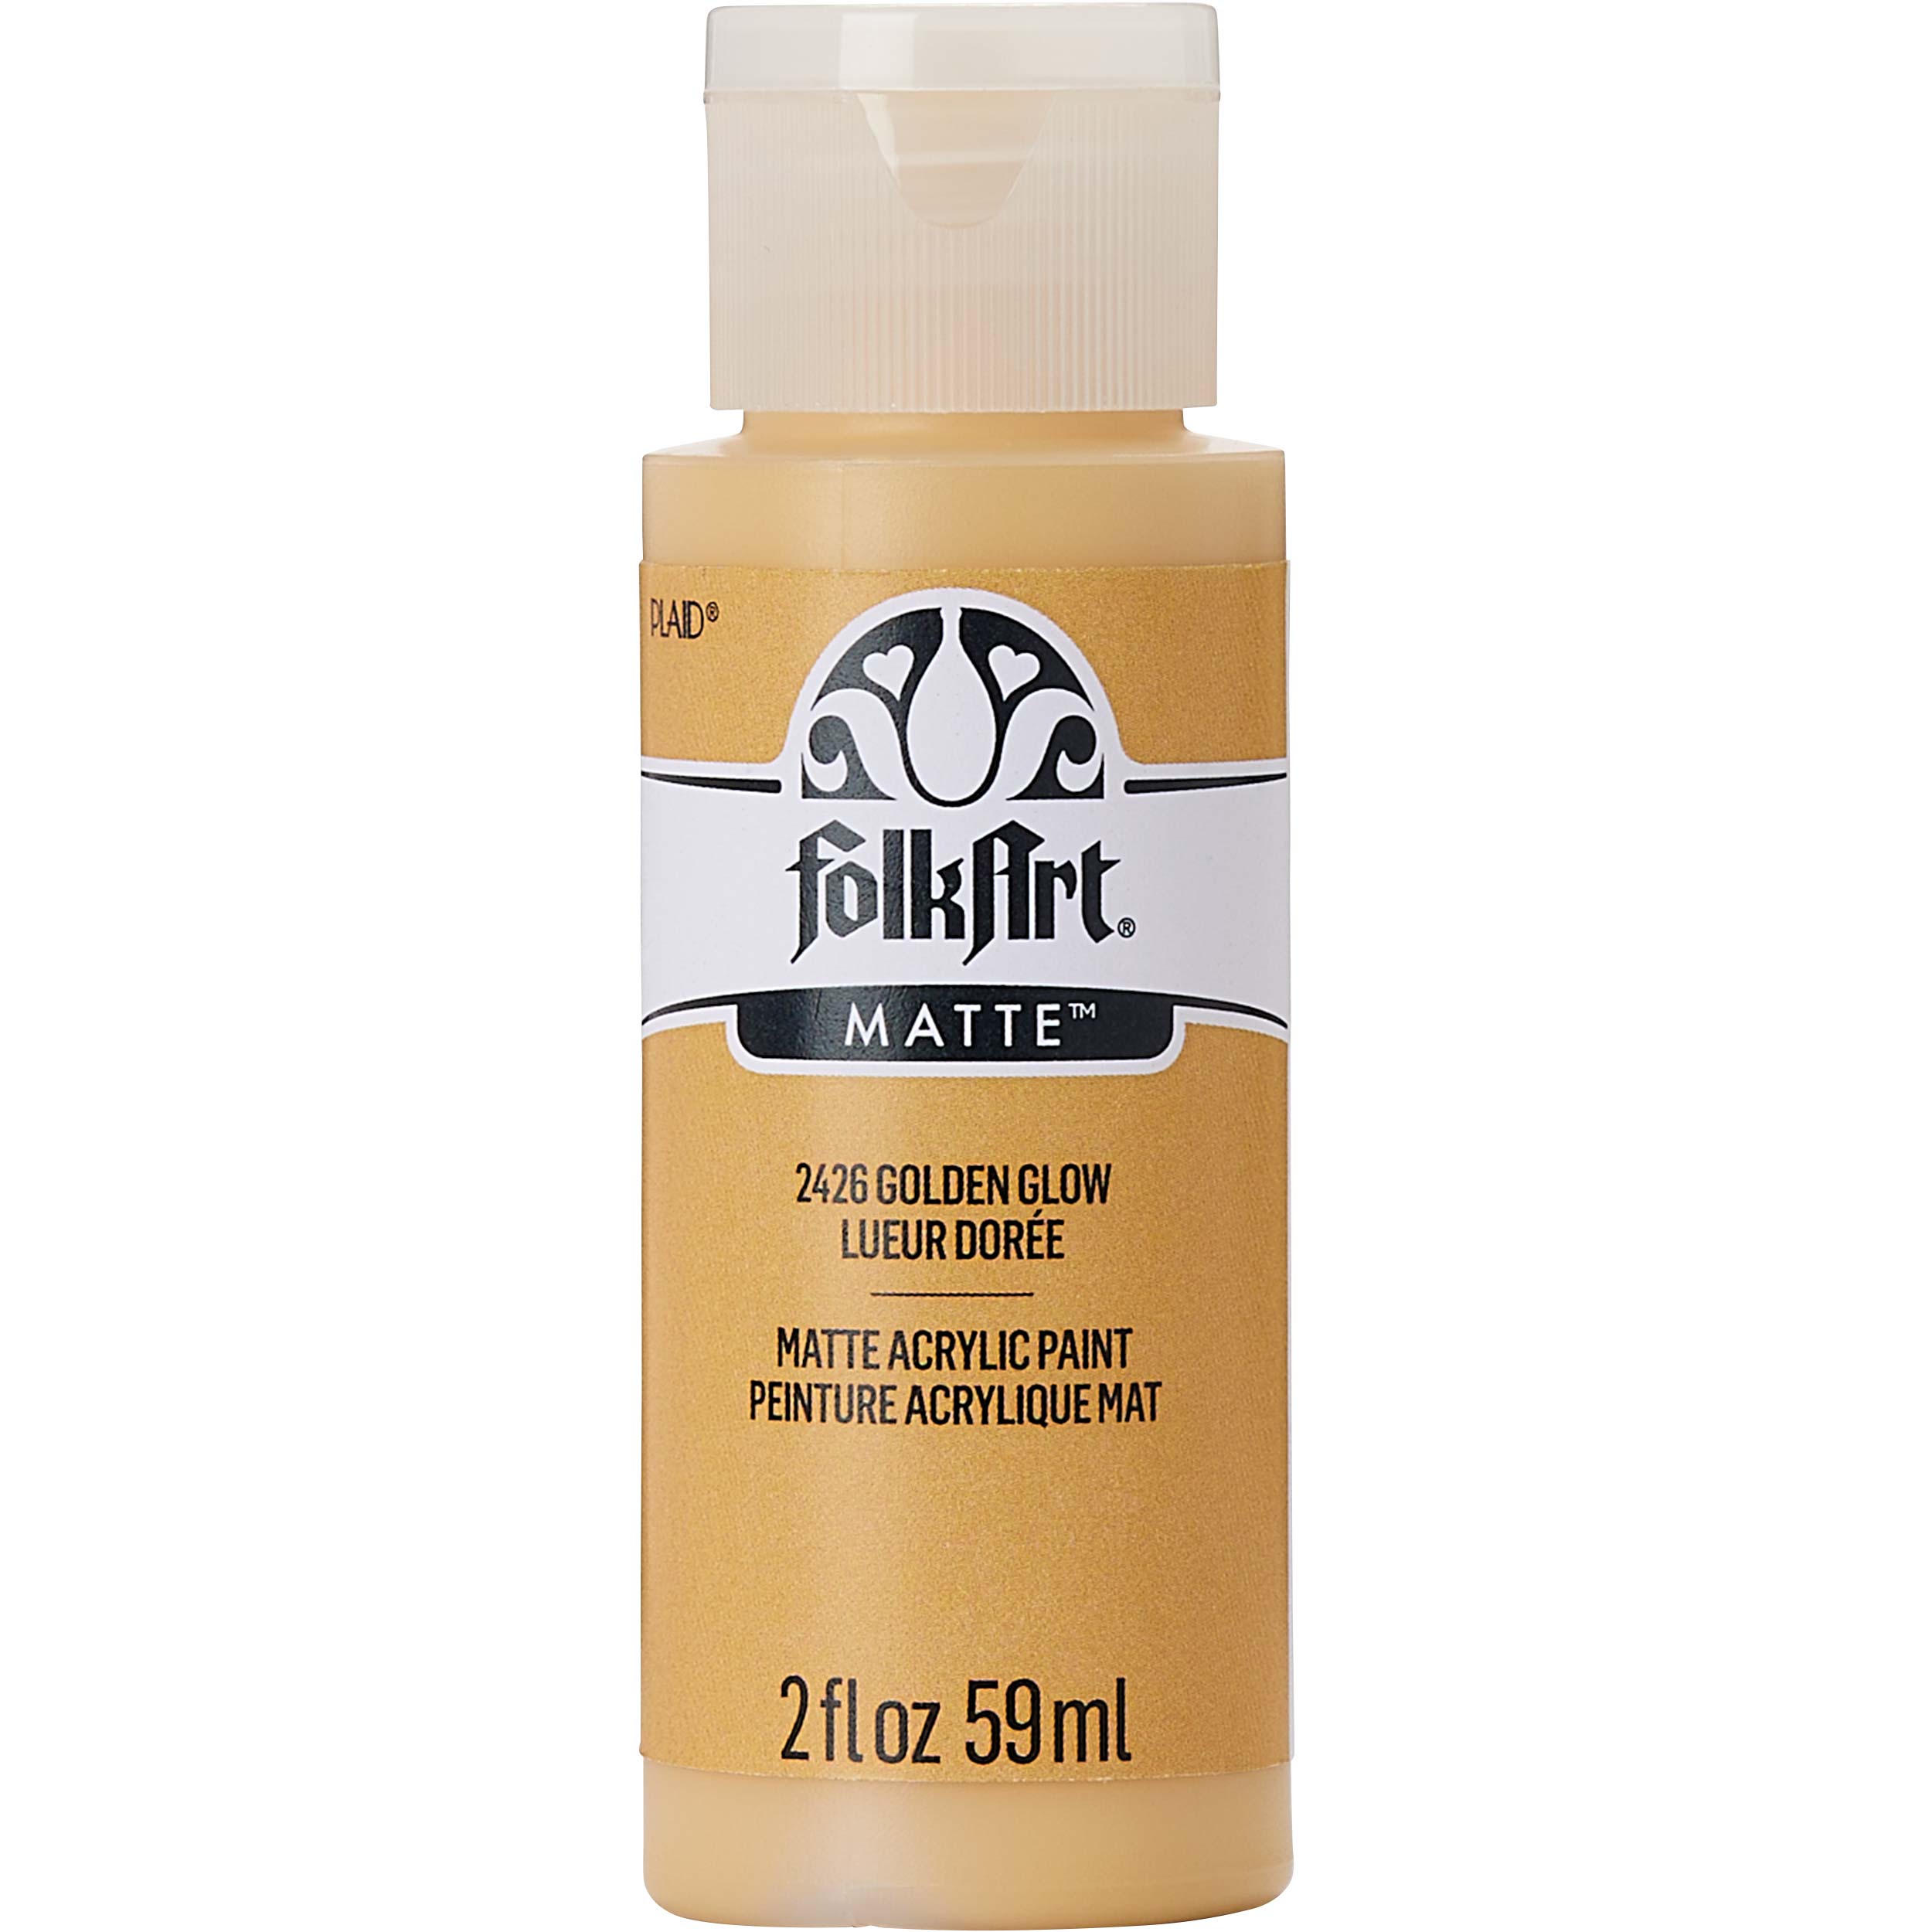 FolkArt ® Acrylic Colors - Golden Glow, 2 oz. - 2426